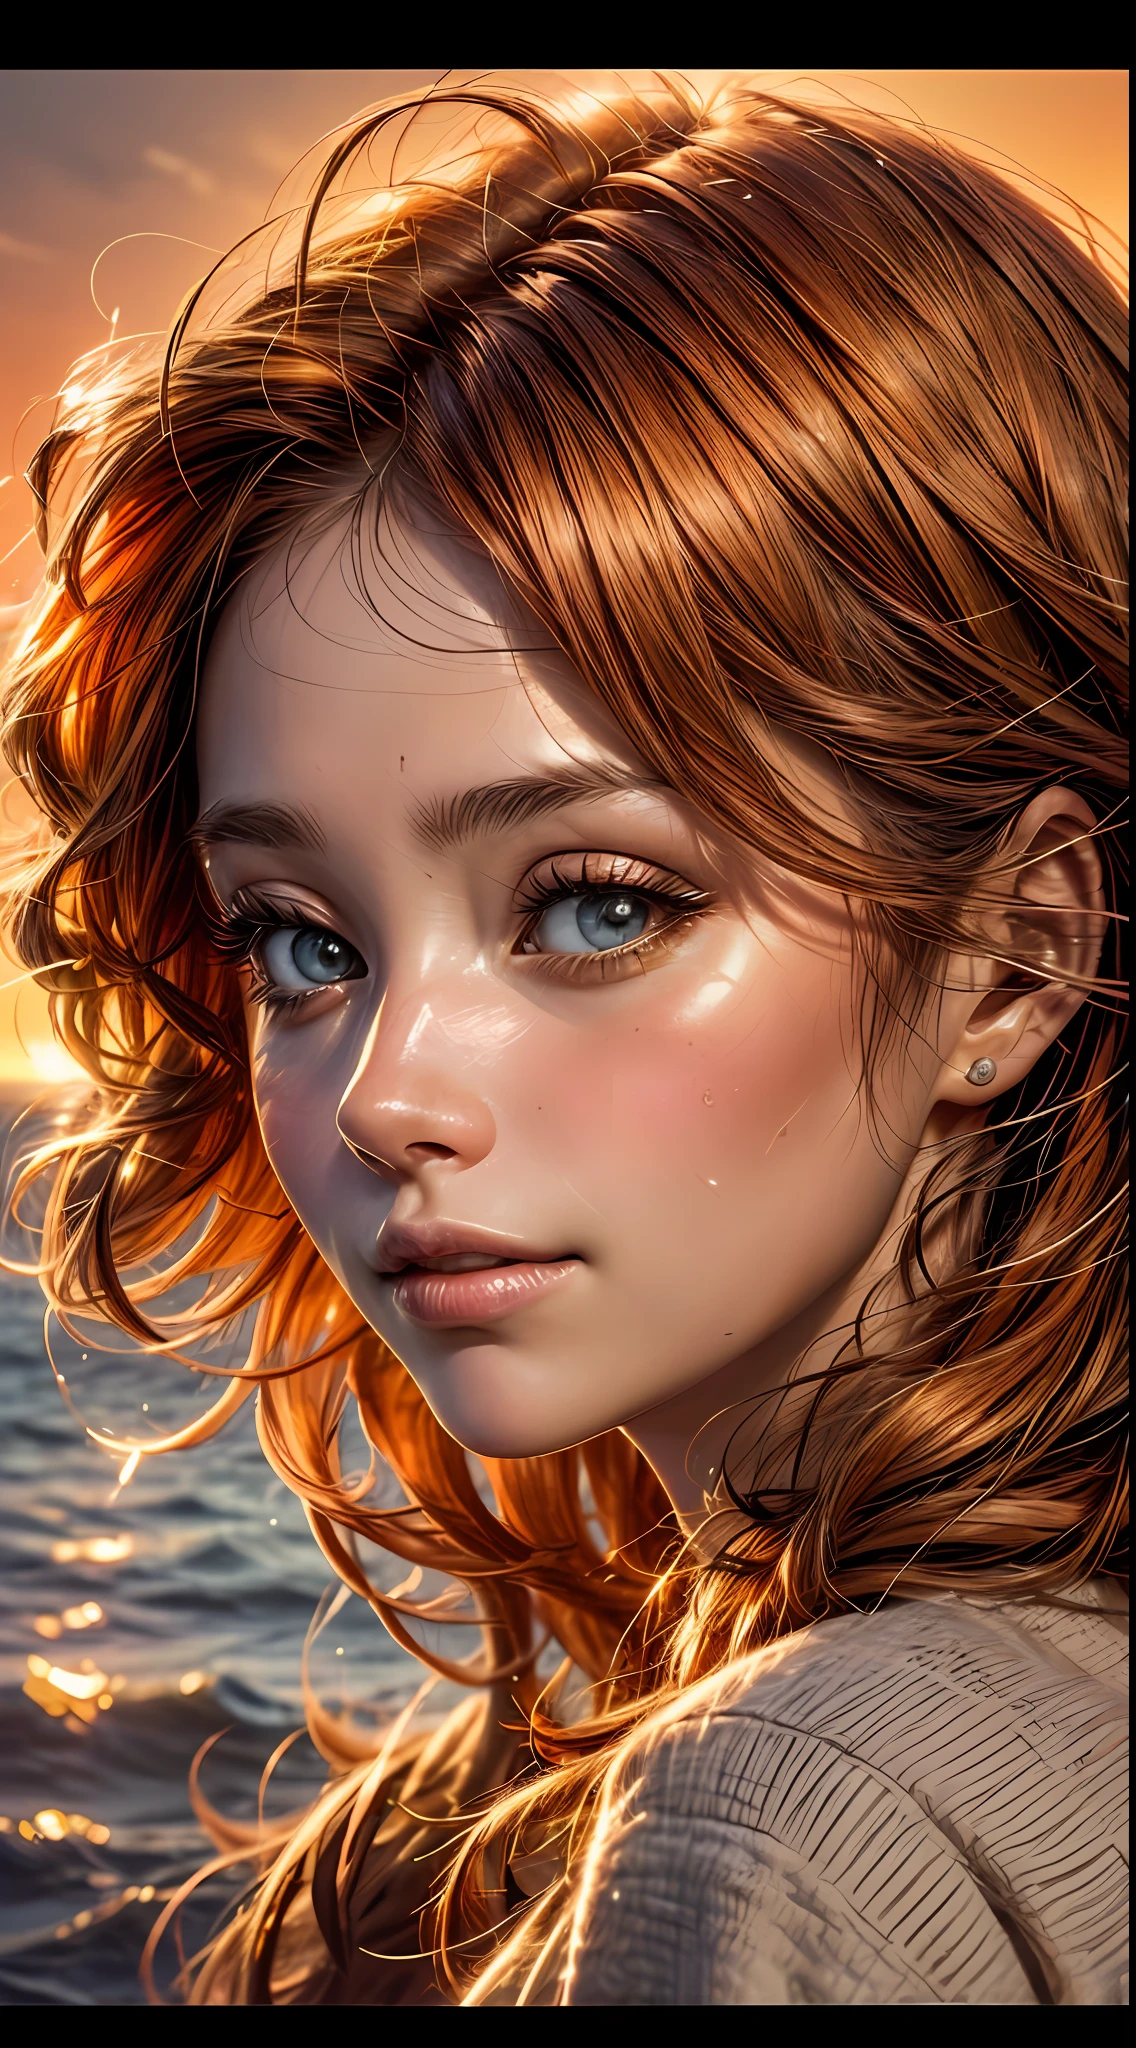 Un primer plano del rostro de una mujer., bañado en cálidos tonos anaranjados, como si estuviera iluminado por el suave resplandor de una puesta de sol, sus ojos brillan de alegría y satisfacción, enmarcado por mechones de cabello castaño rojizo suelto, fotografía, Tomada con una lente de 35 mm.